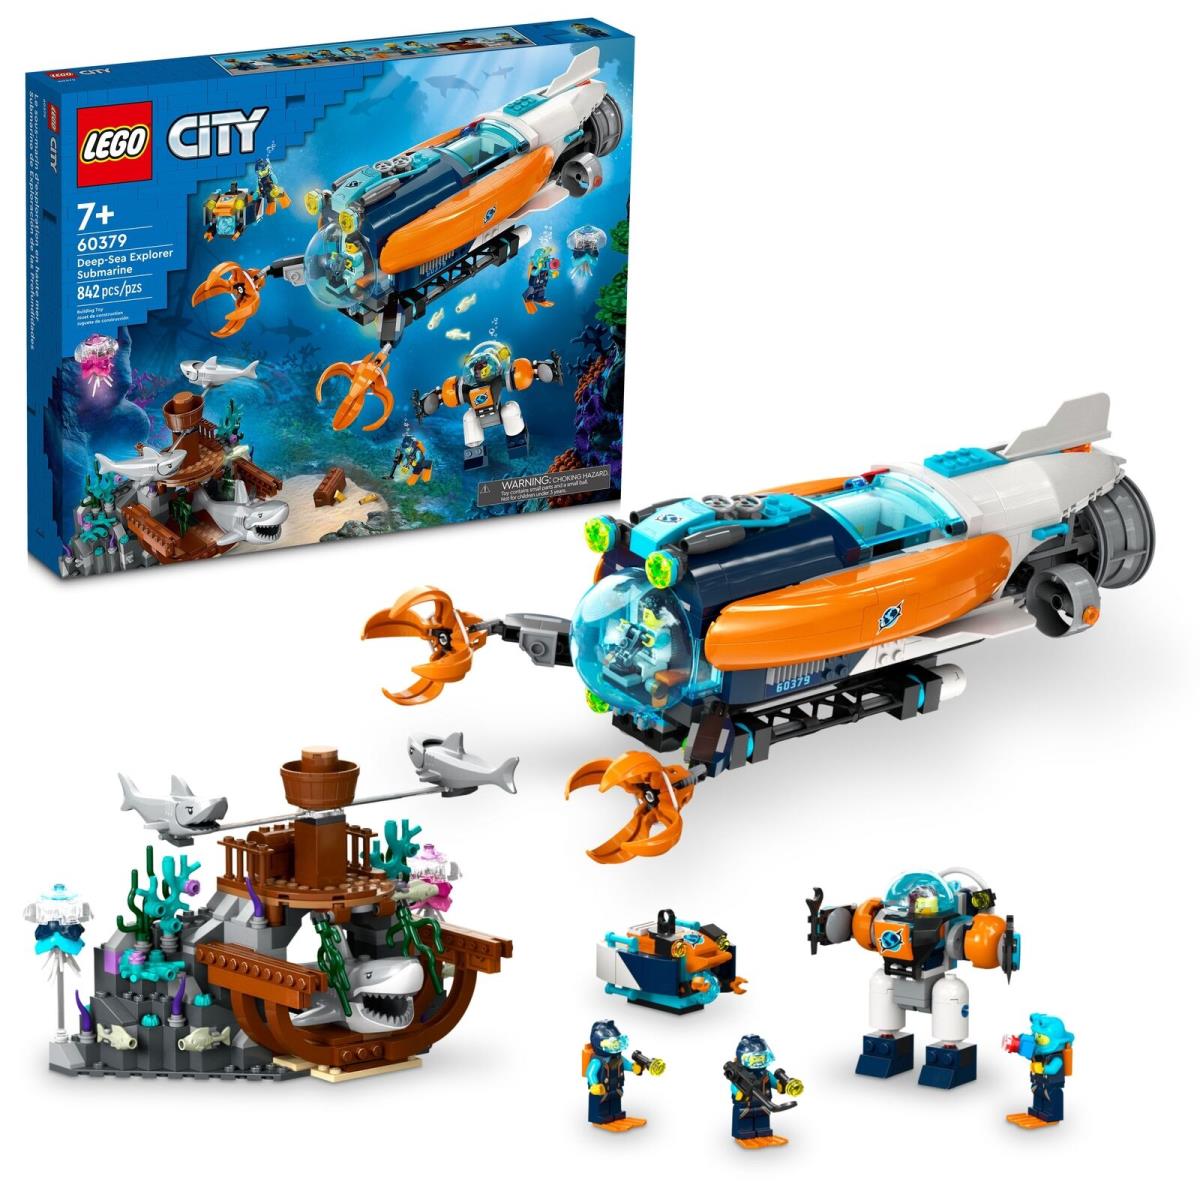 Lego City: Deep-sea Explorer Submarine 60379